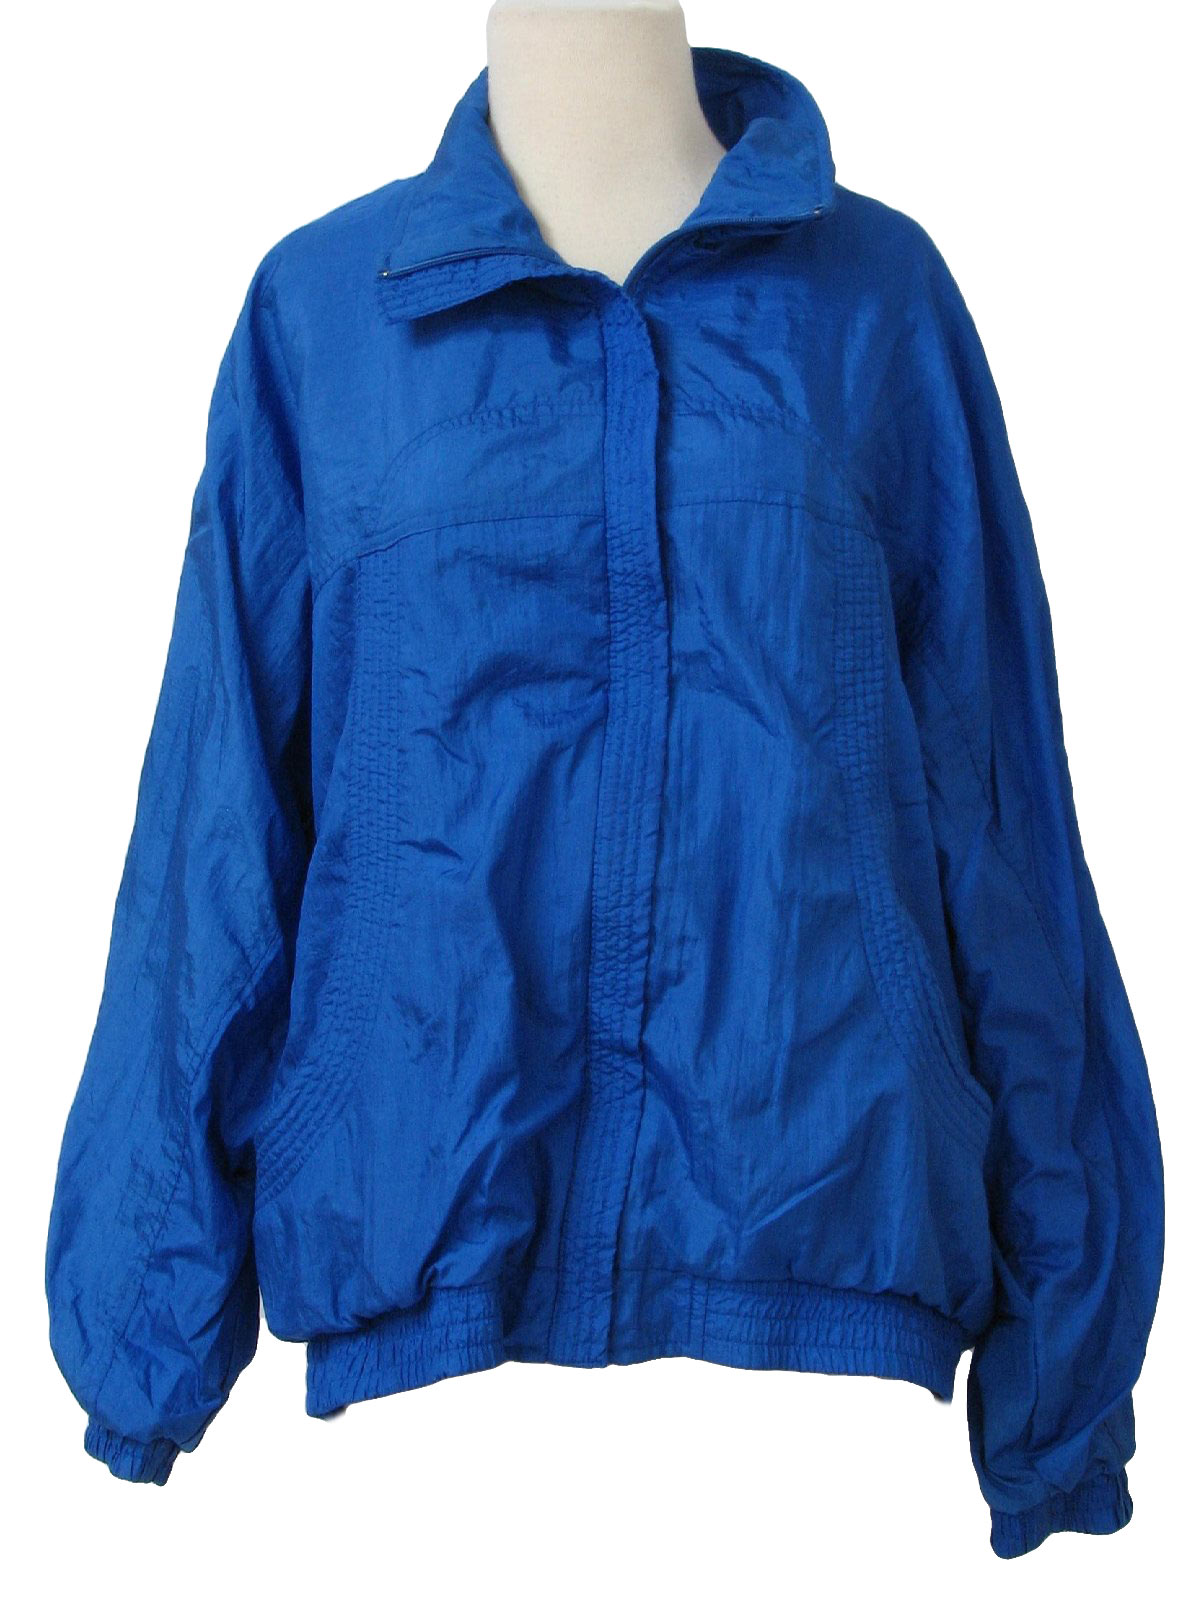 Womens Nylon Windbreaker Jackets - Coat Nj